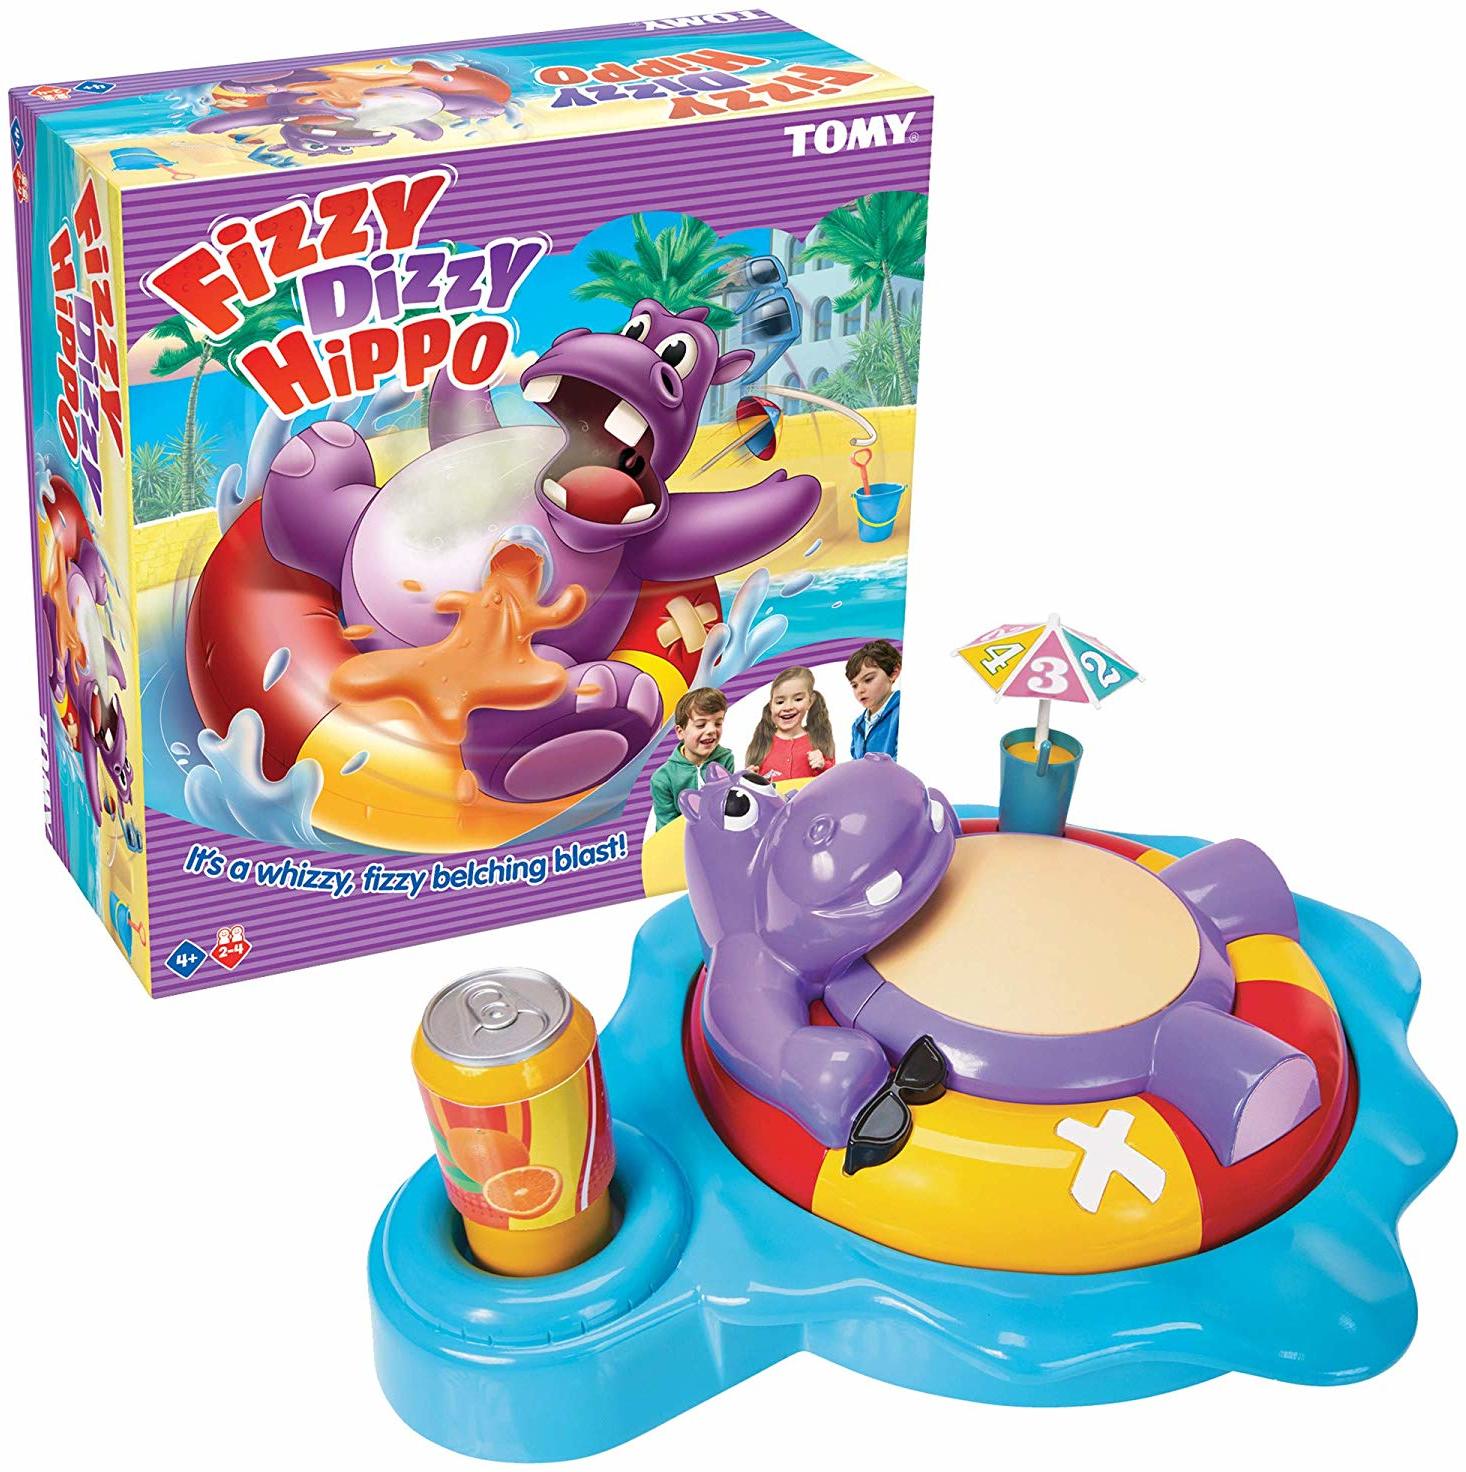 TOMY T72606EN Fizzy Dizzy Hippo-Spiel